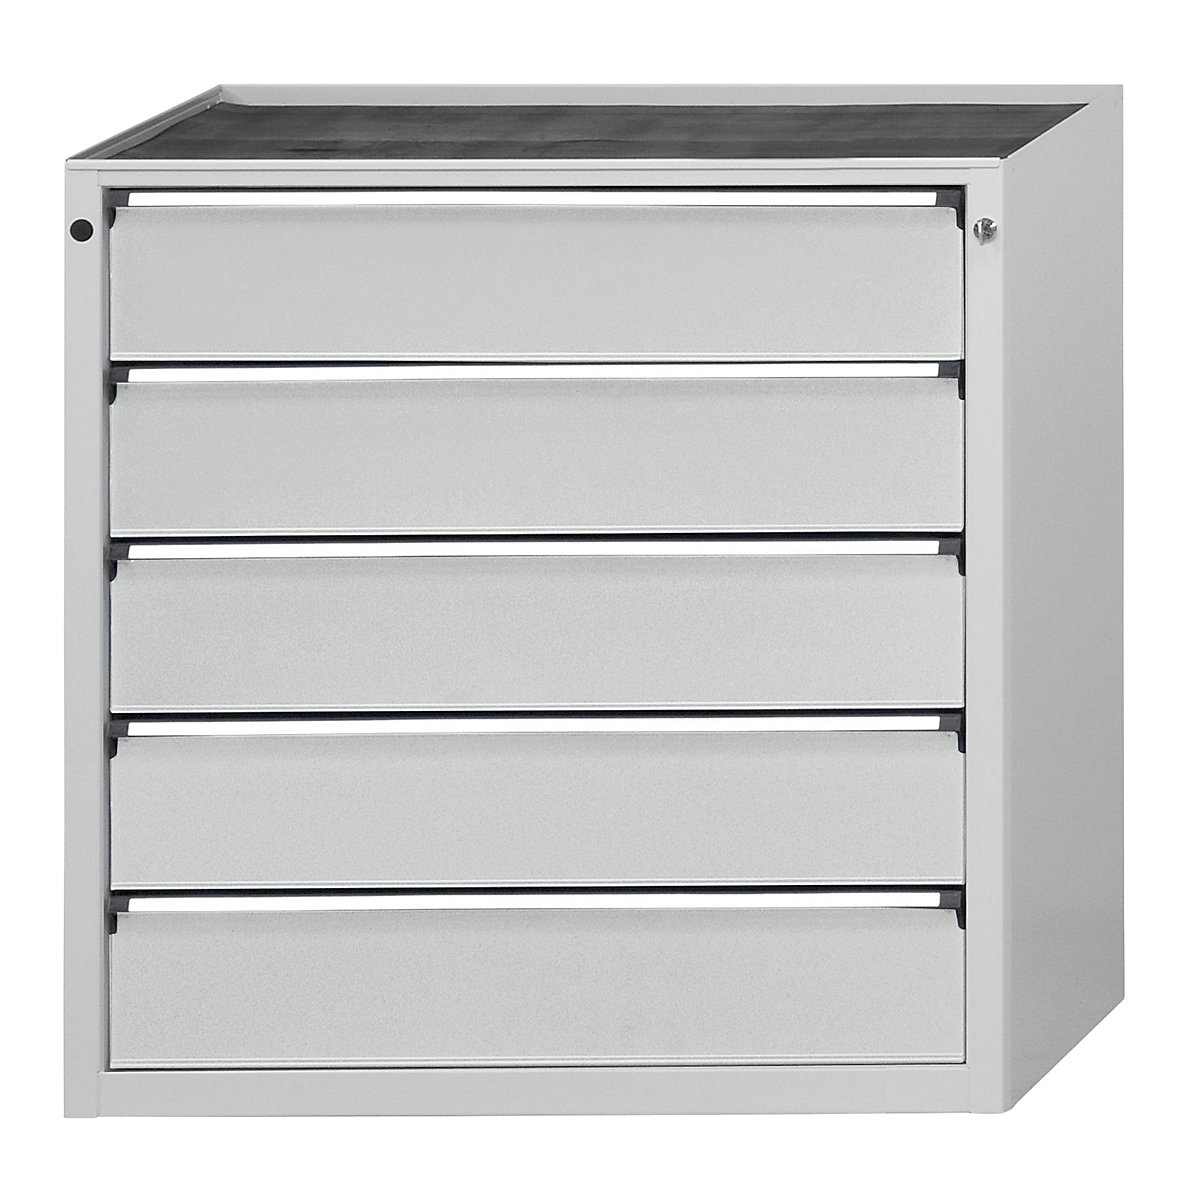 ANKE – Armoire à tiroirs, l x p 910 x 675 mm, 5 tiroirs, hauteur 980 mm, façade gris clair